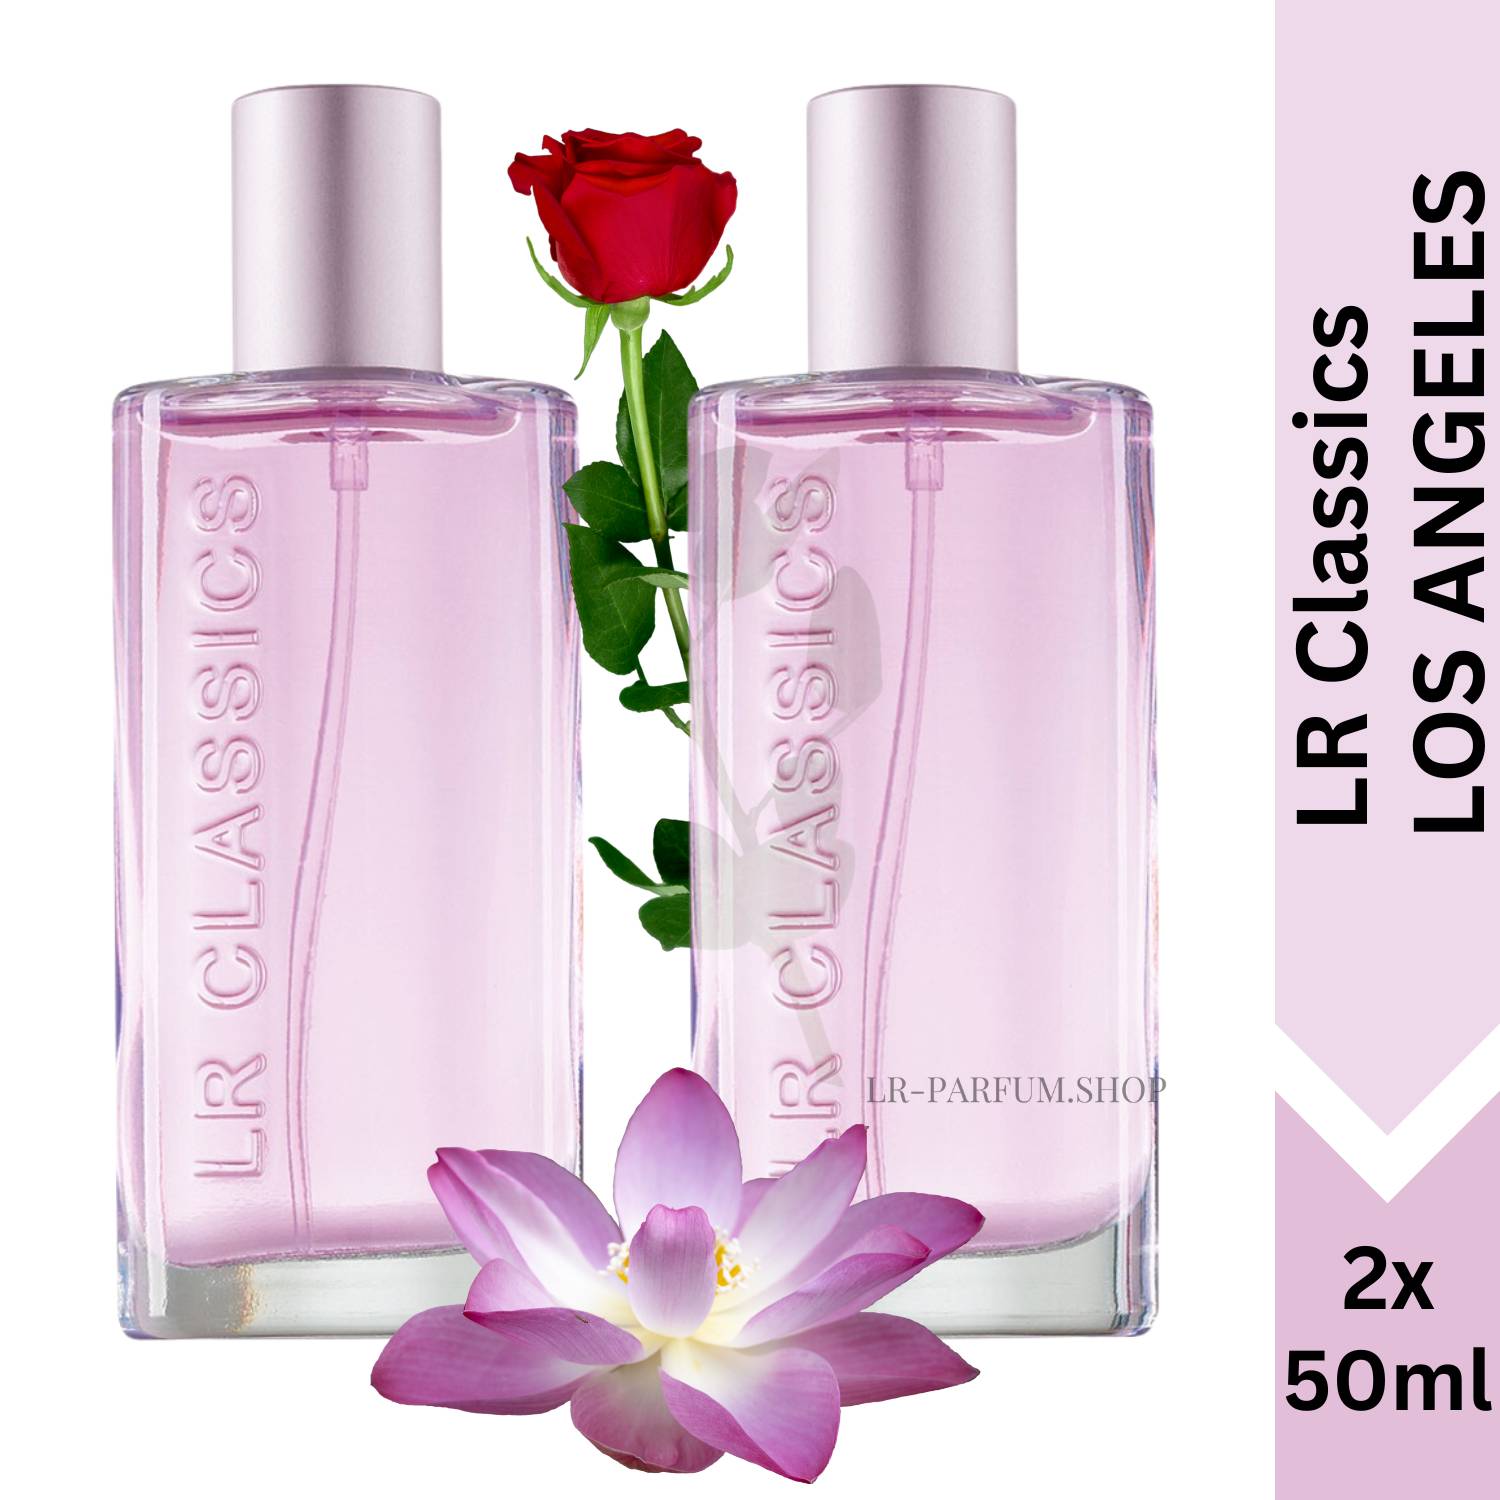 LR Classics Los Angeles - Eau de Parfum, 2er Pack (2x50ml) - LR-Parfum.shop